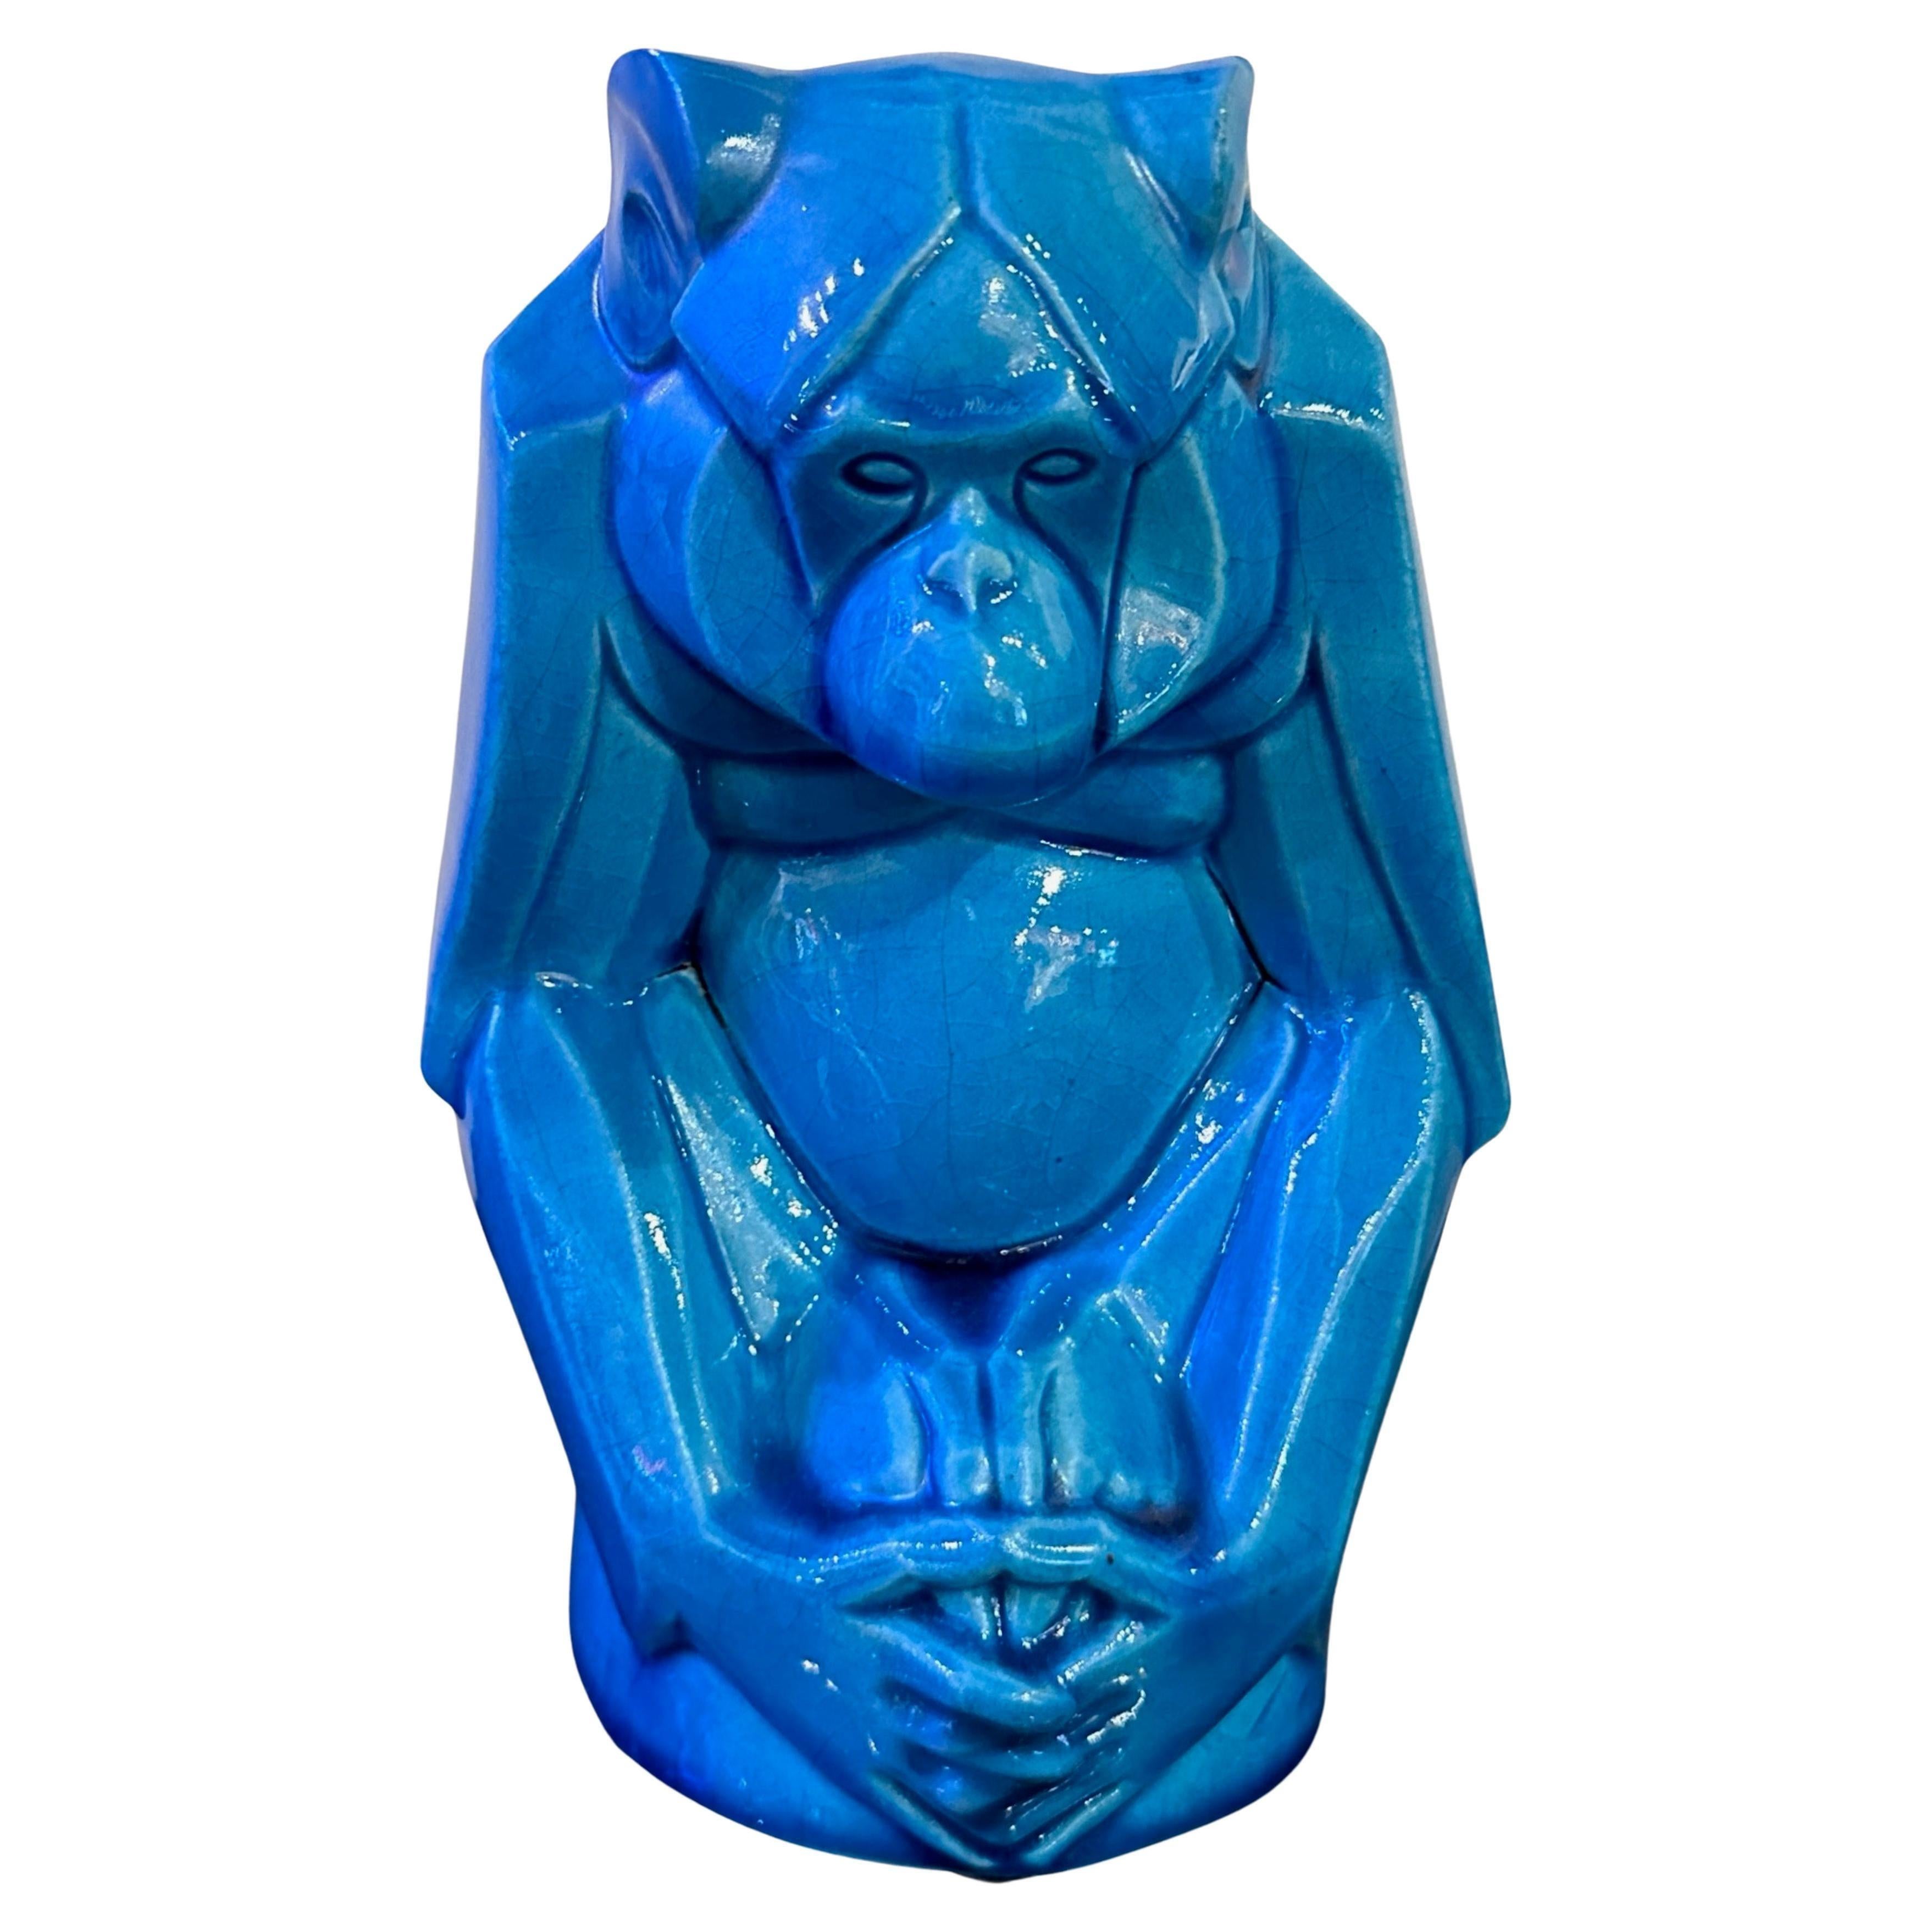 Sculpture de singe en céramique émaillée moderniste française par Gabriel Beauvais, 1930. Cette sculpture a été réalisée dans une céramique à l'émail bleu turquoise, une couleur étonnante probablement produite par les éditions Kaza à Paris. La forme